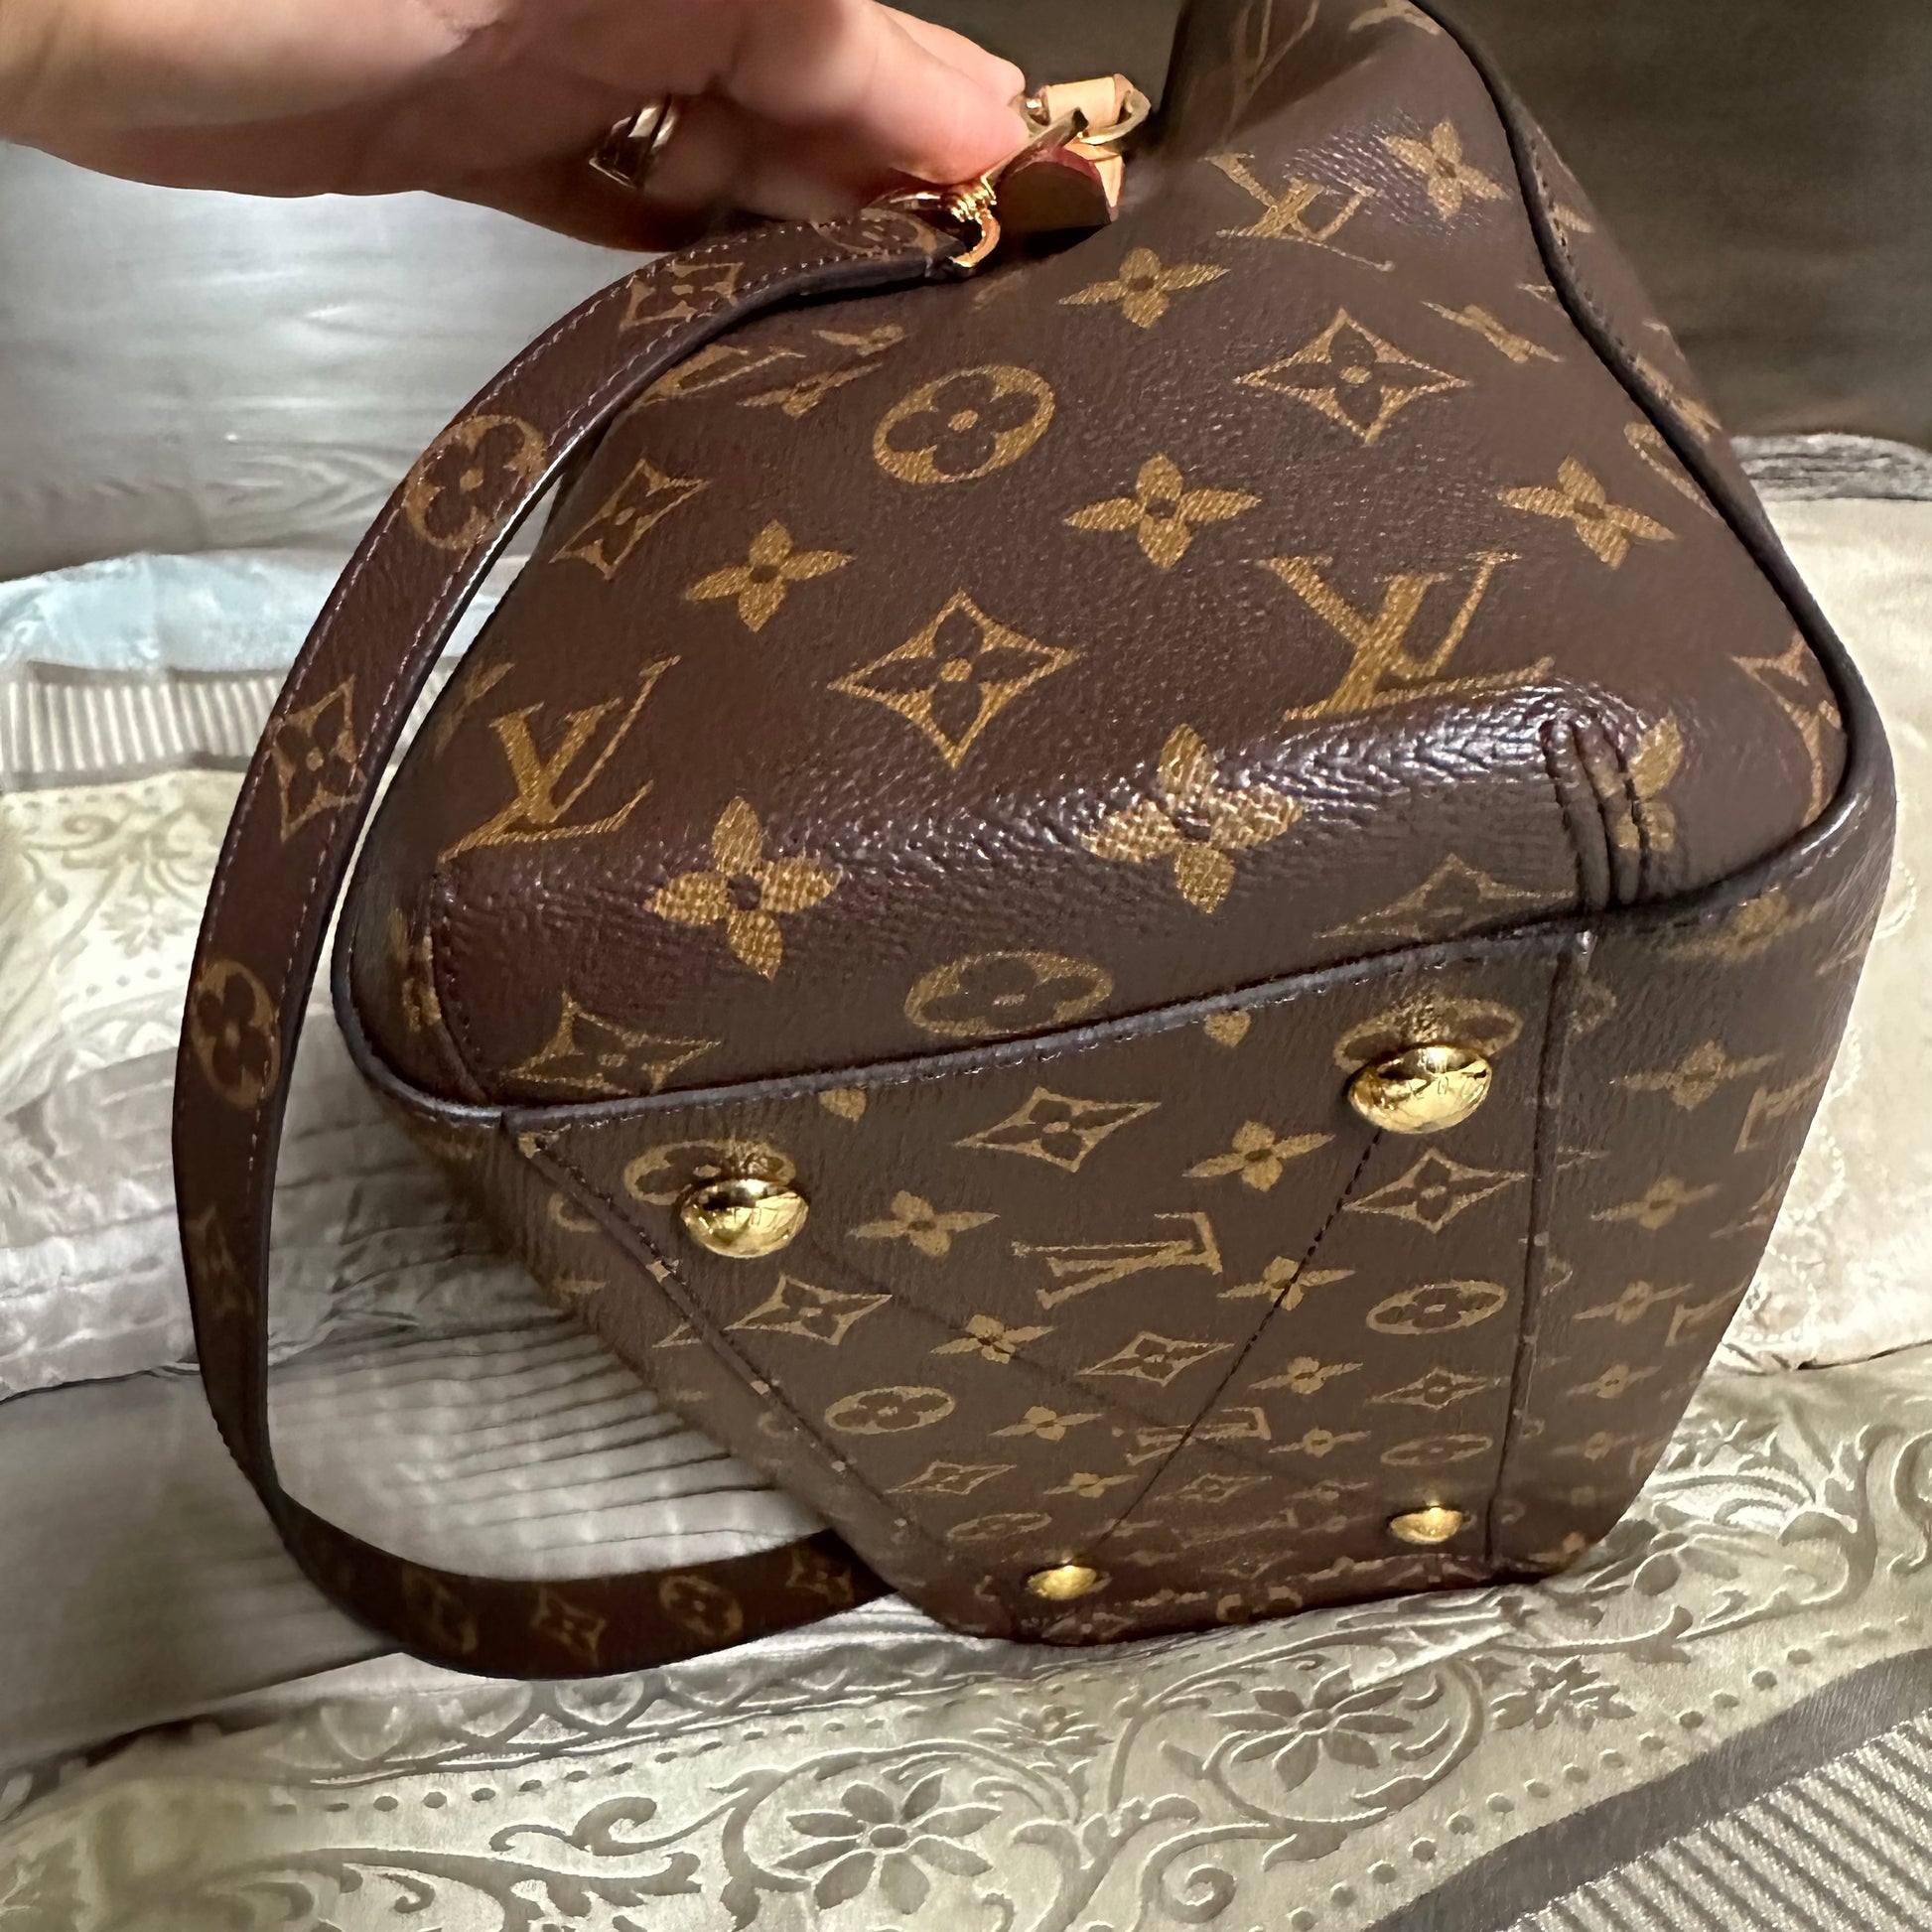 Louis Vuitton Montaigne Handbag Strap